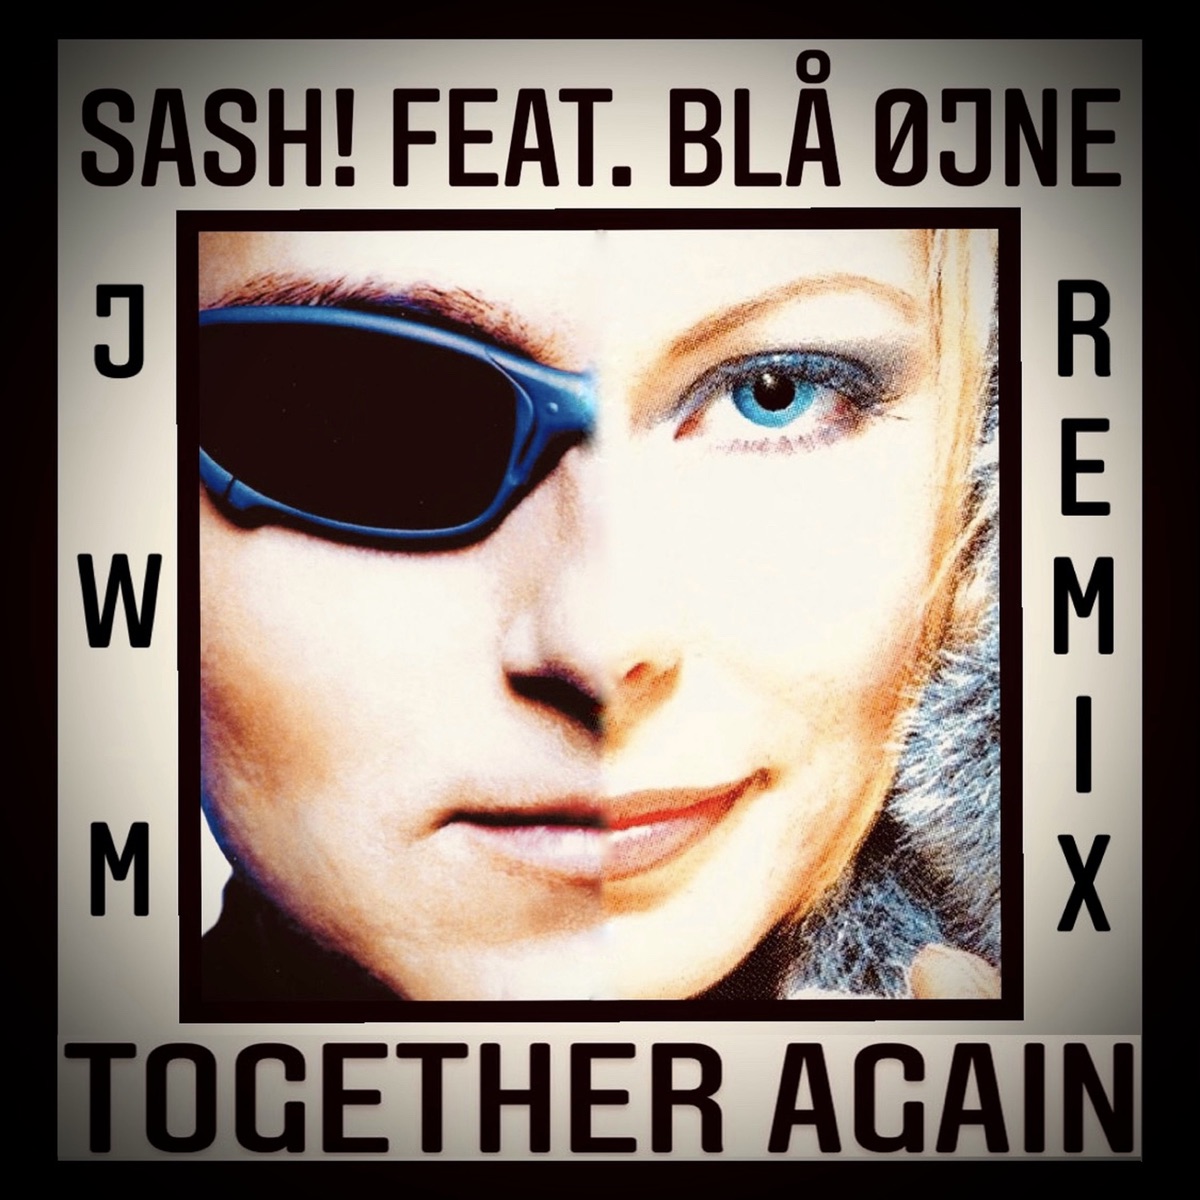 mundstykke Flad effektiv Together Again (feat. Blå øjne) [Jwm Remix] - Single by Sash! on Apple Music